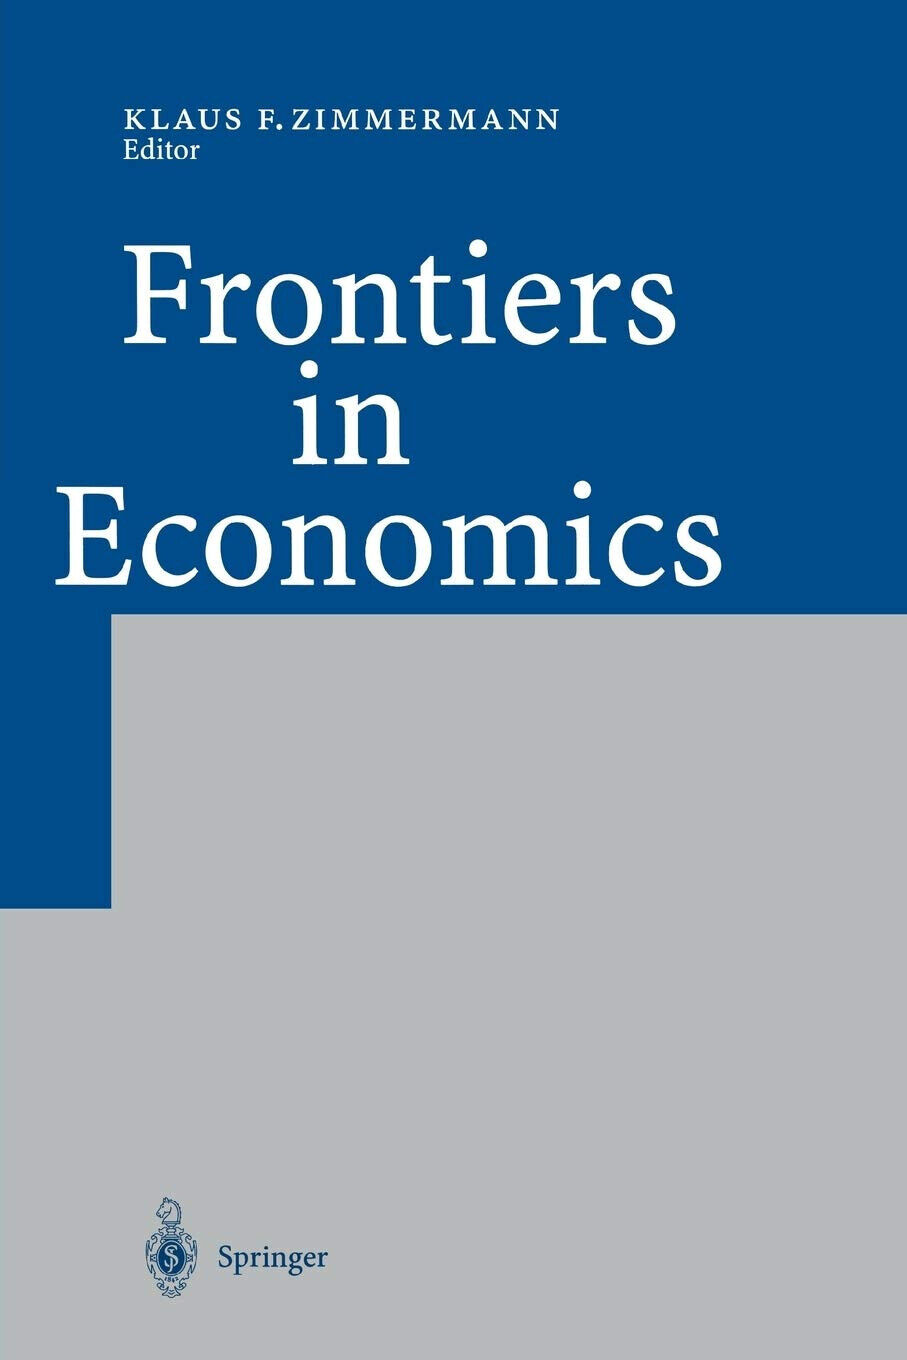 Frontiers in Economics - Klaus F. Zimmermann  - Springer, 2010